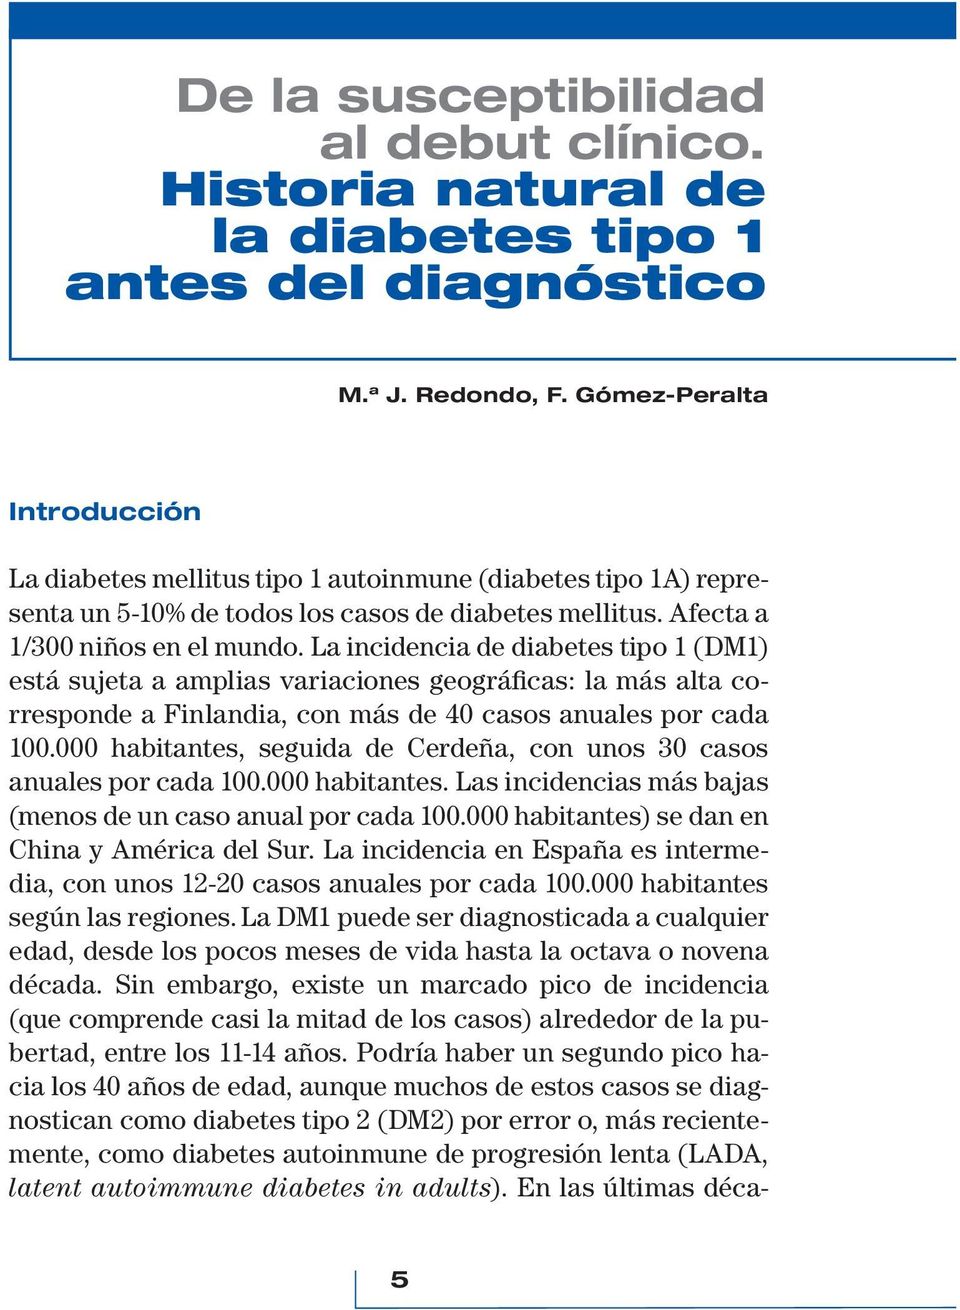 La incidencia de diabetes tipo 1 (DM1) está sujeta a amplias variaciones geográficas: la más alta corresponde a Finlandia, con más de 40 casos anuales por cada 100.